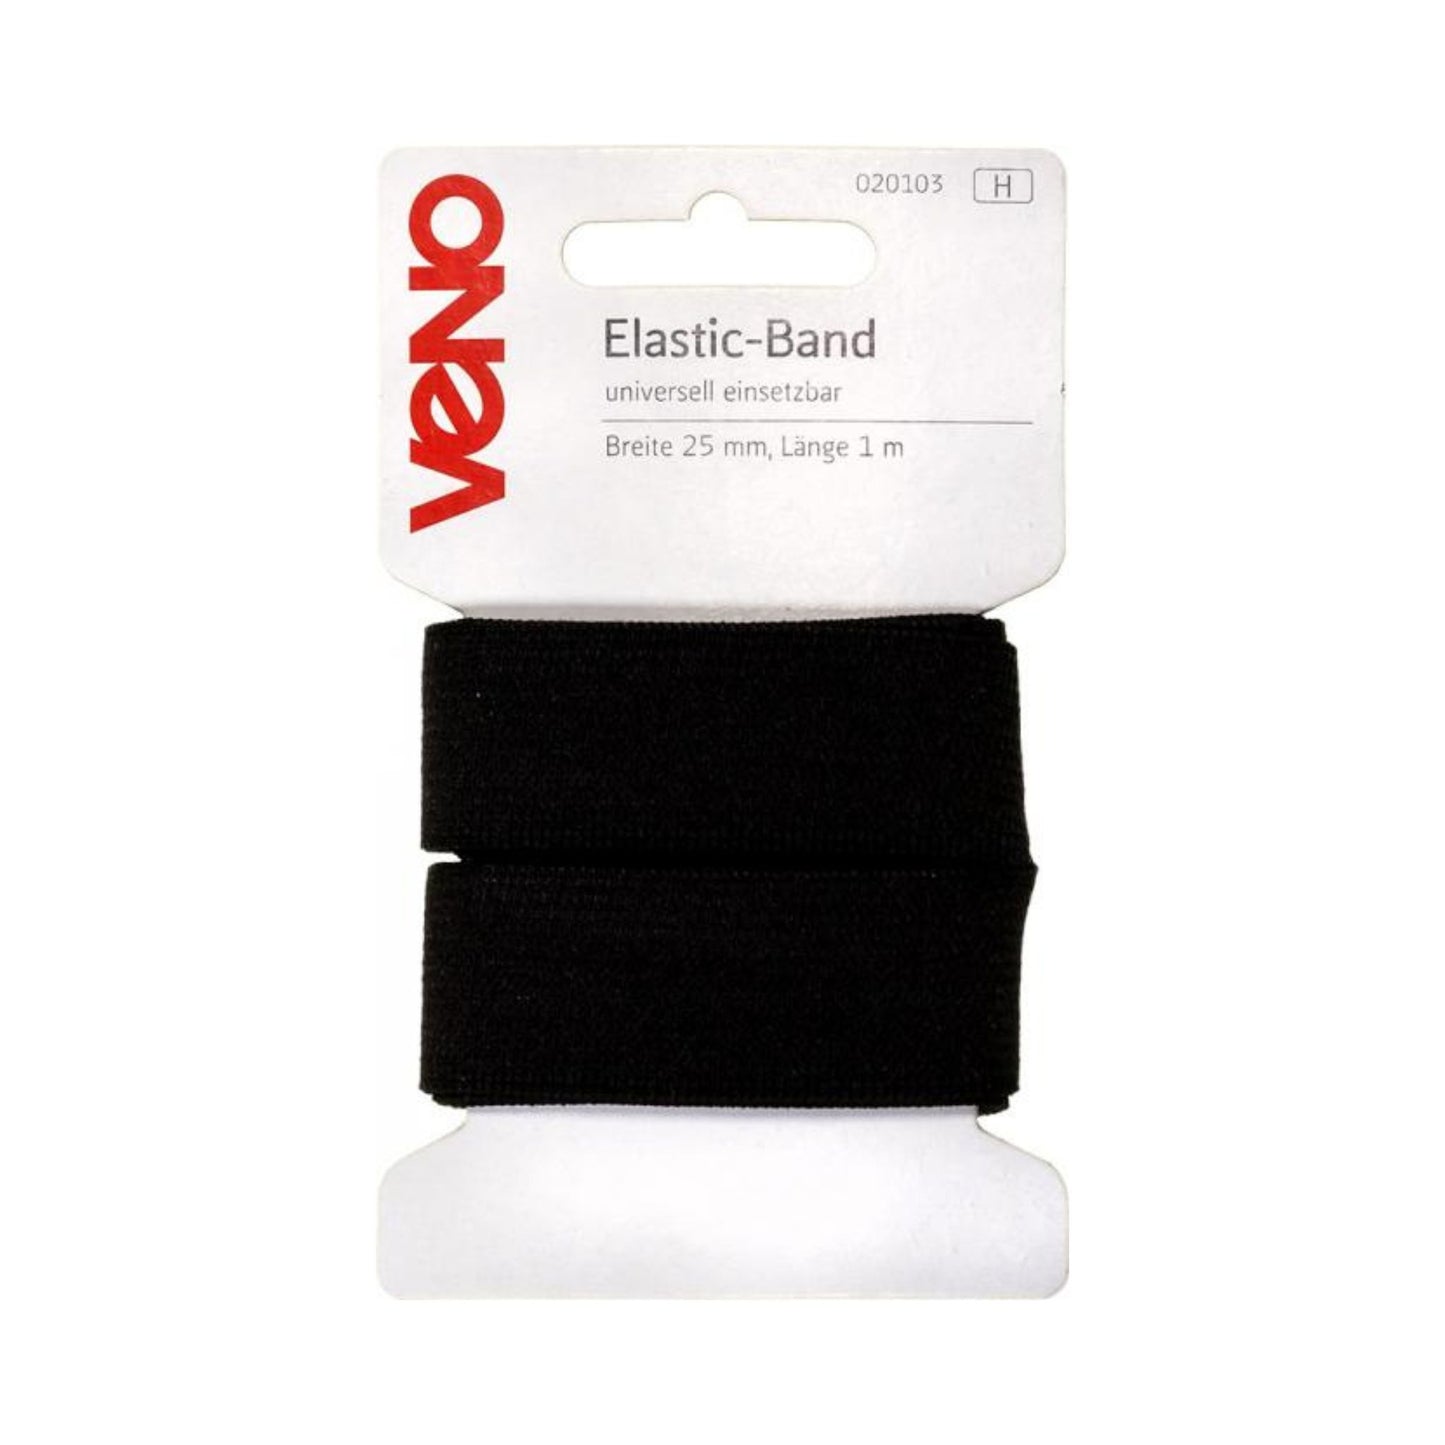 Elastic-Band Uni 1 Meter, 25 mm